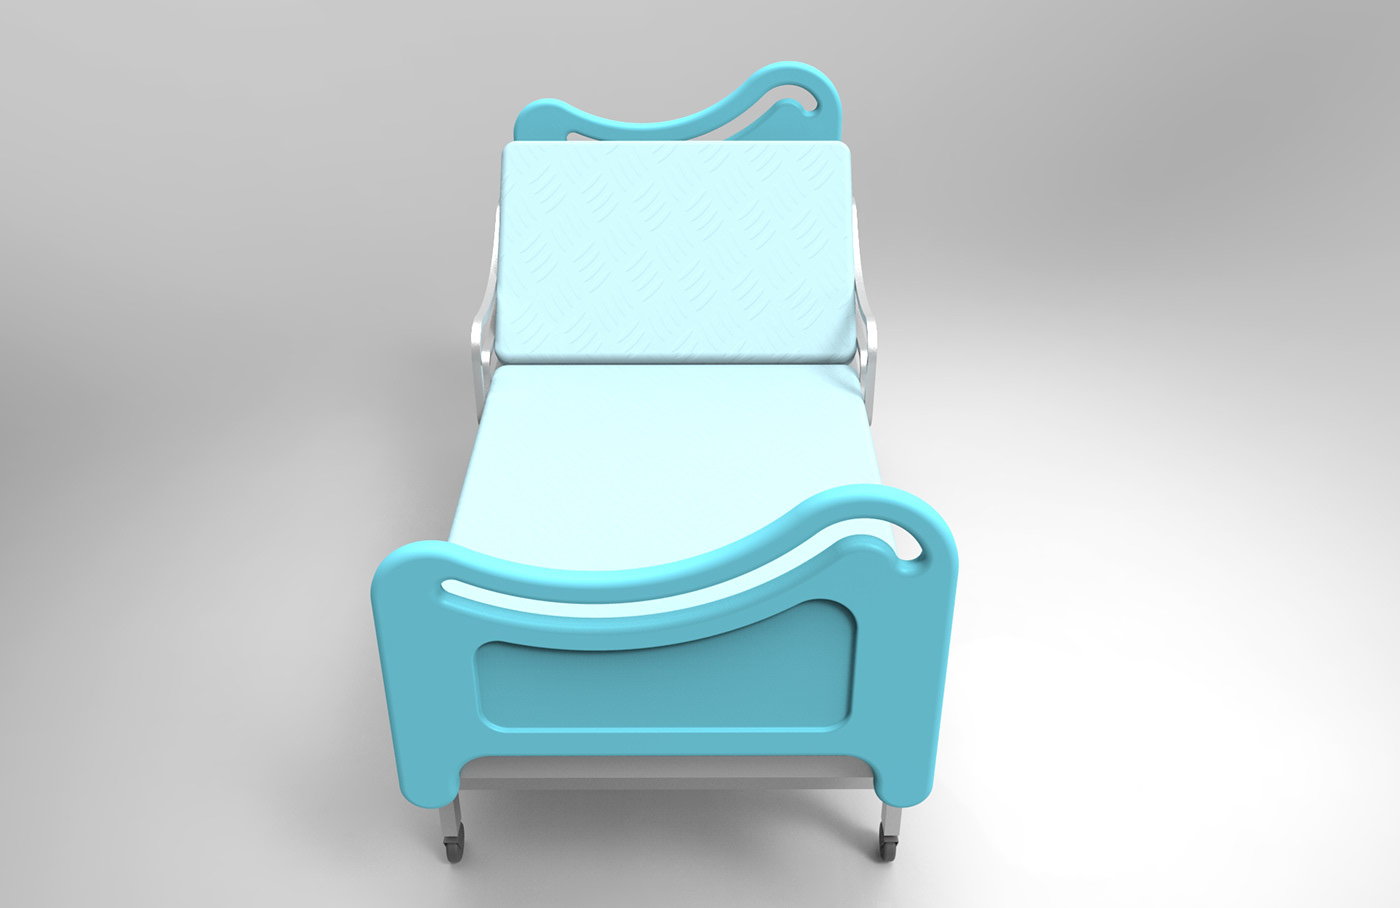 furniture design  hospital metal design product